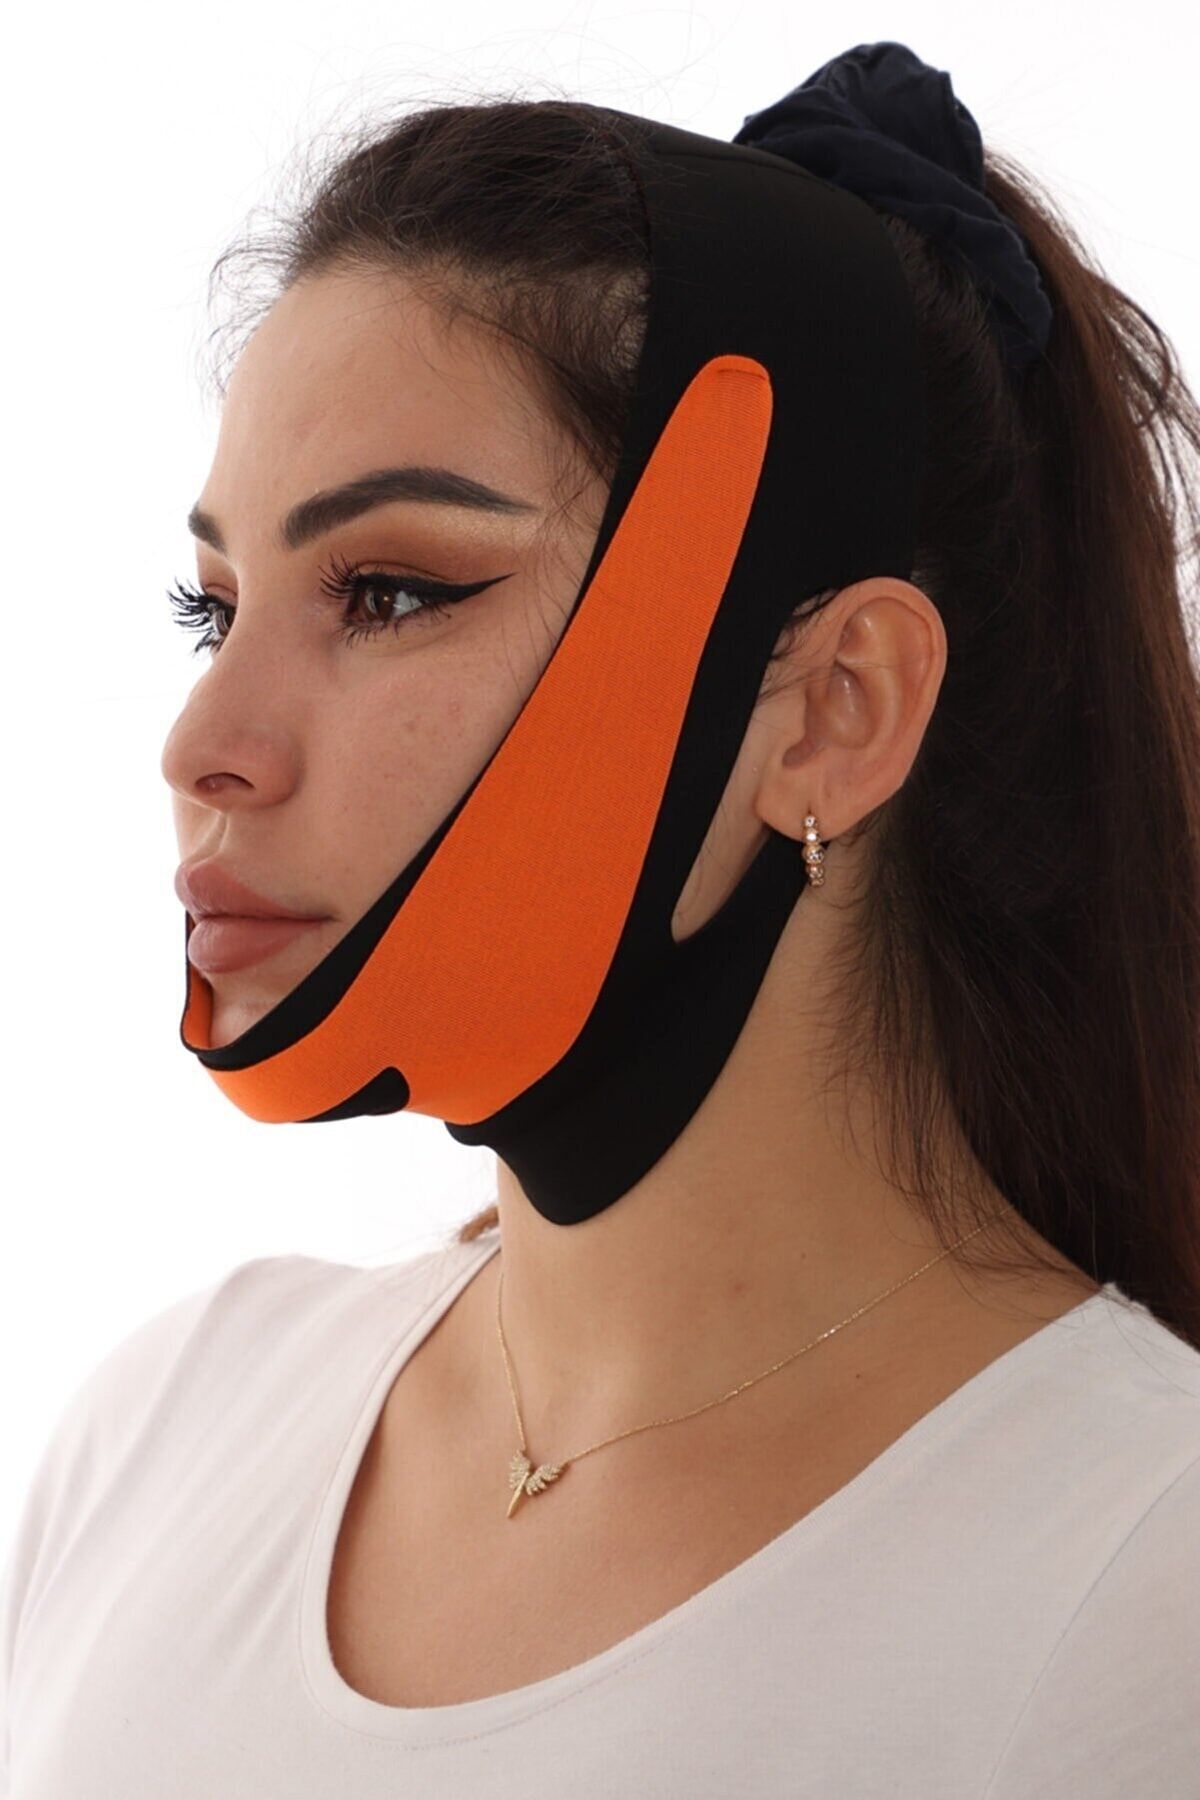 SAUNA SUIT Çene Bandı Yüz Liposuction Gıdı Yüz Korsesi Bandajıreynev